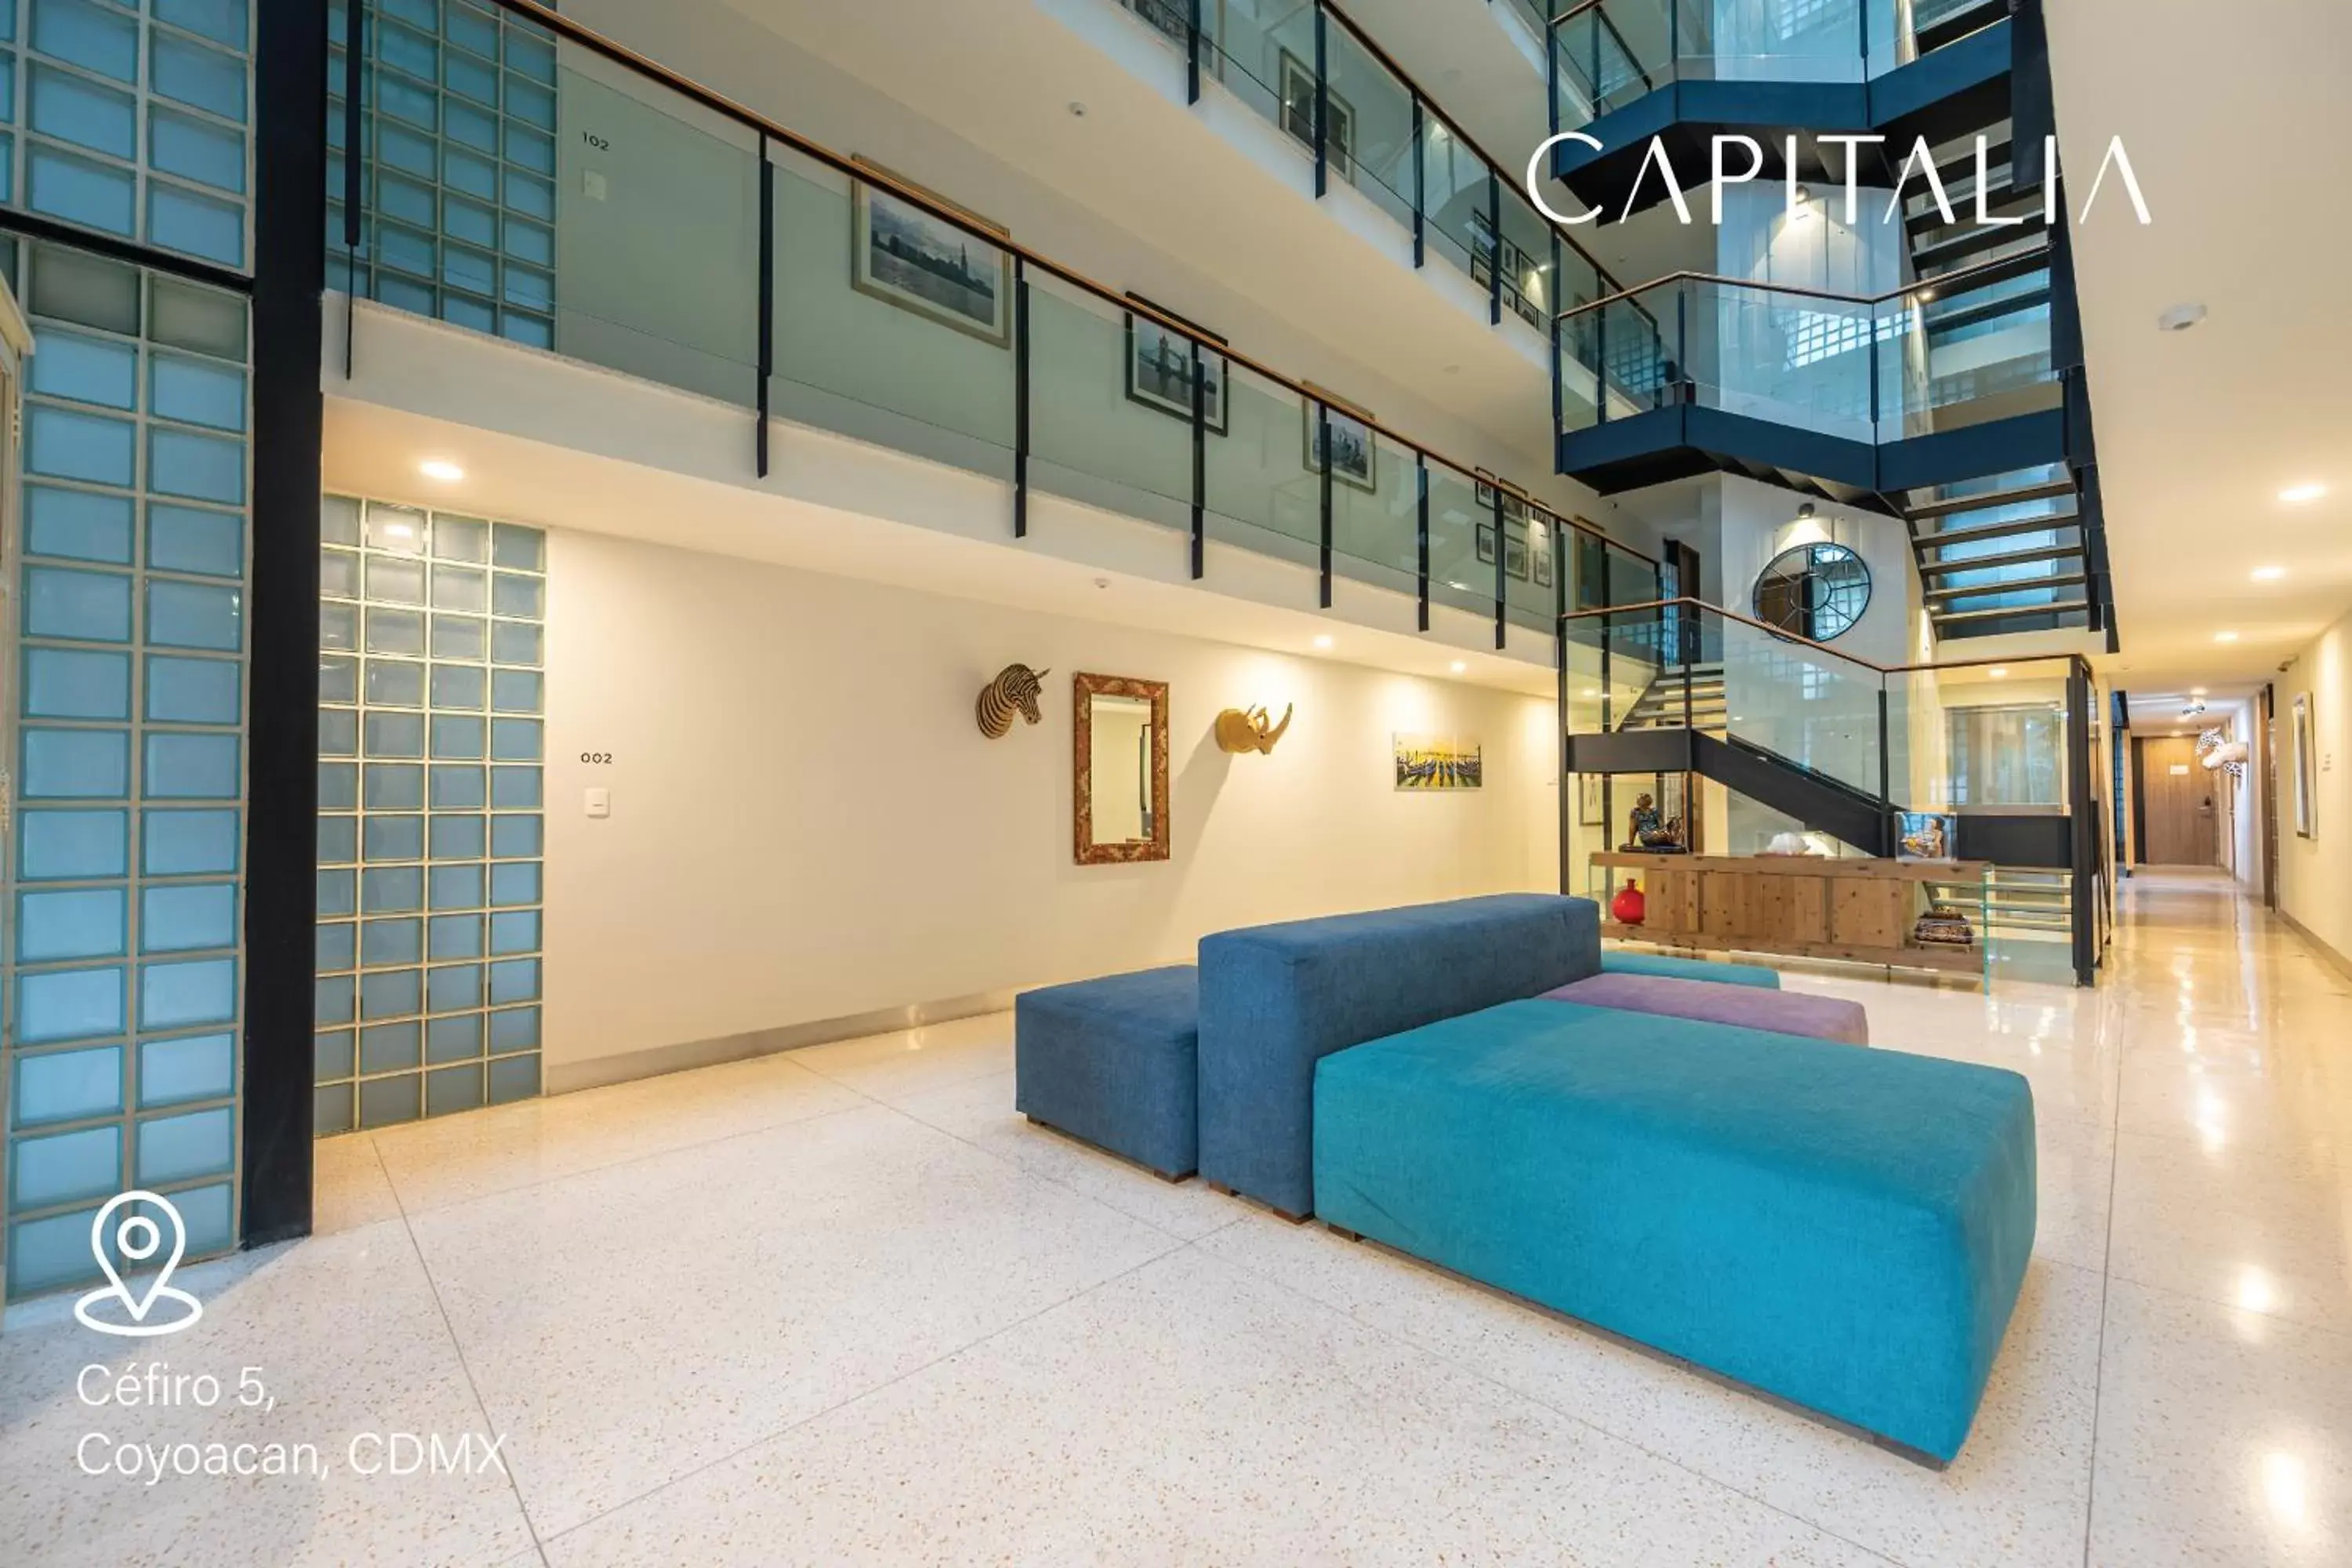 Lobby or reception in Capitalia - Apartments - CÉFIRO CINCO